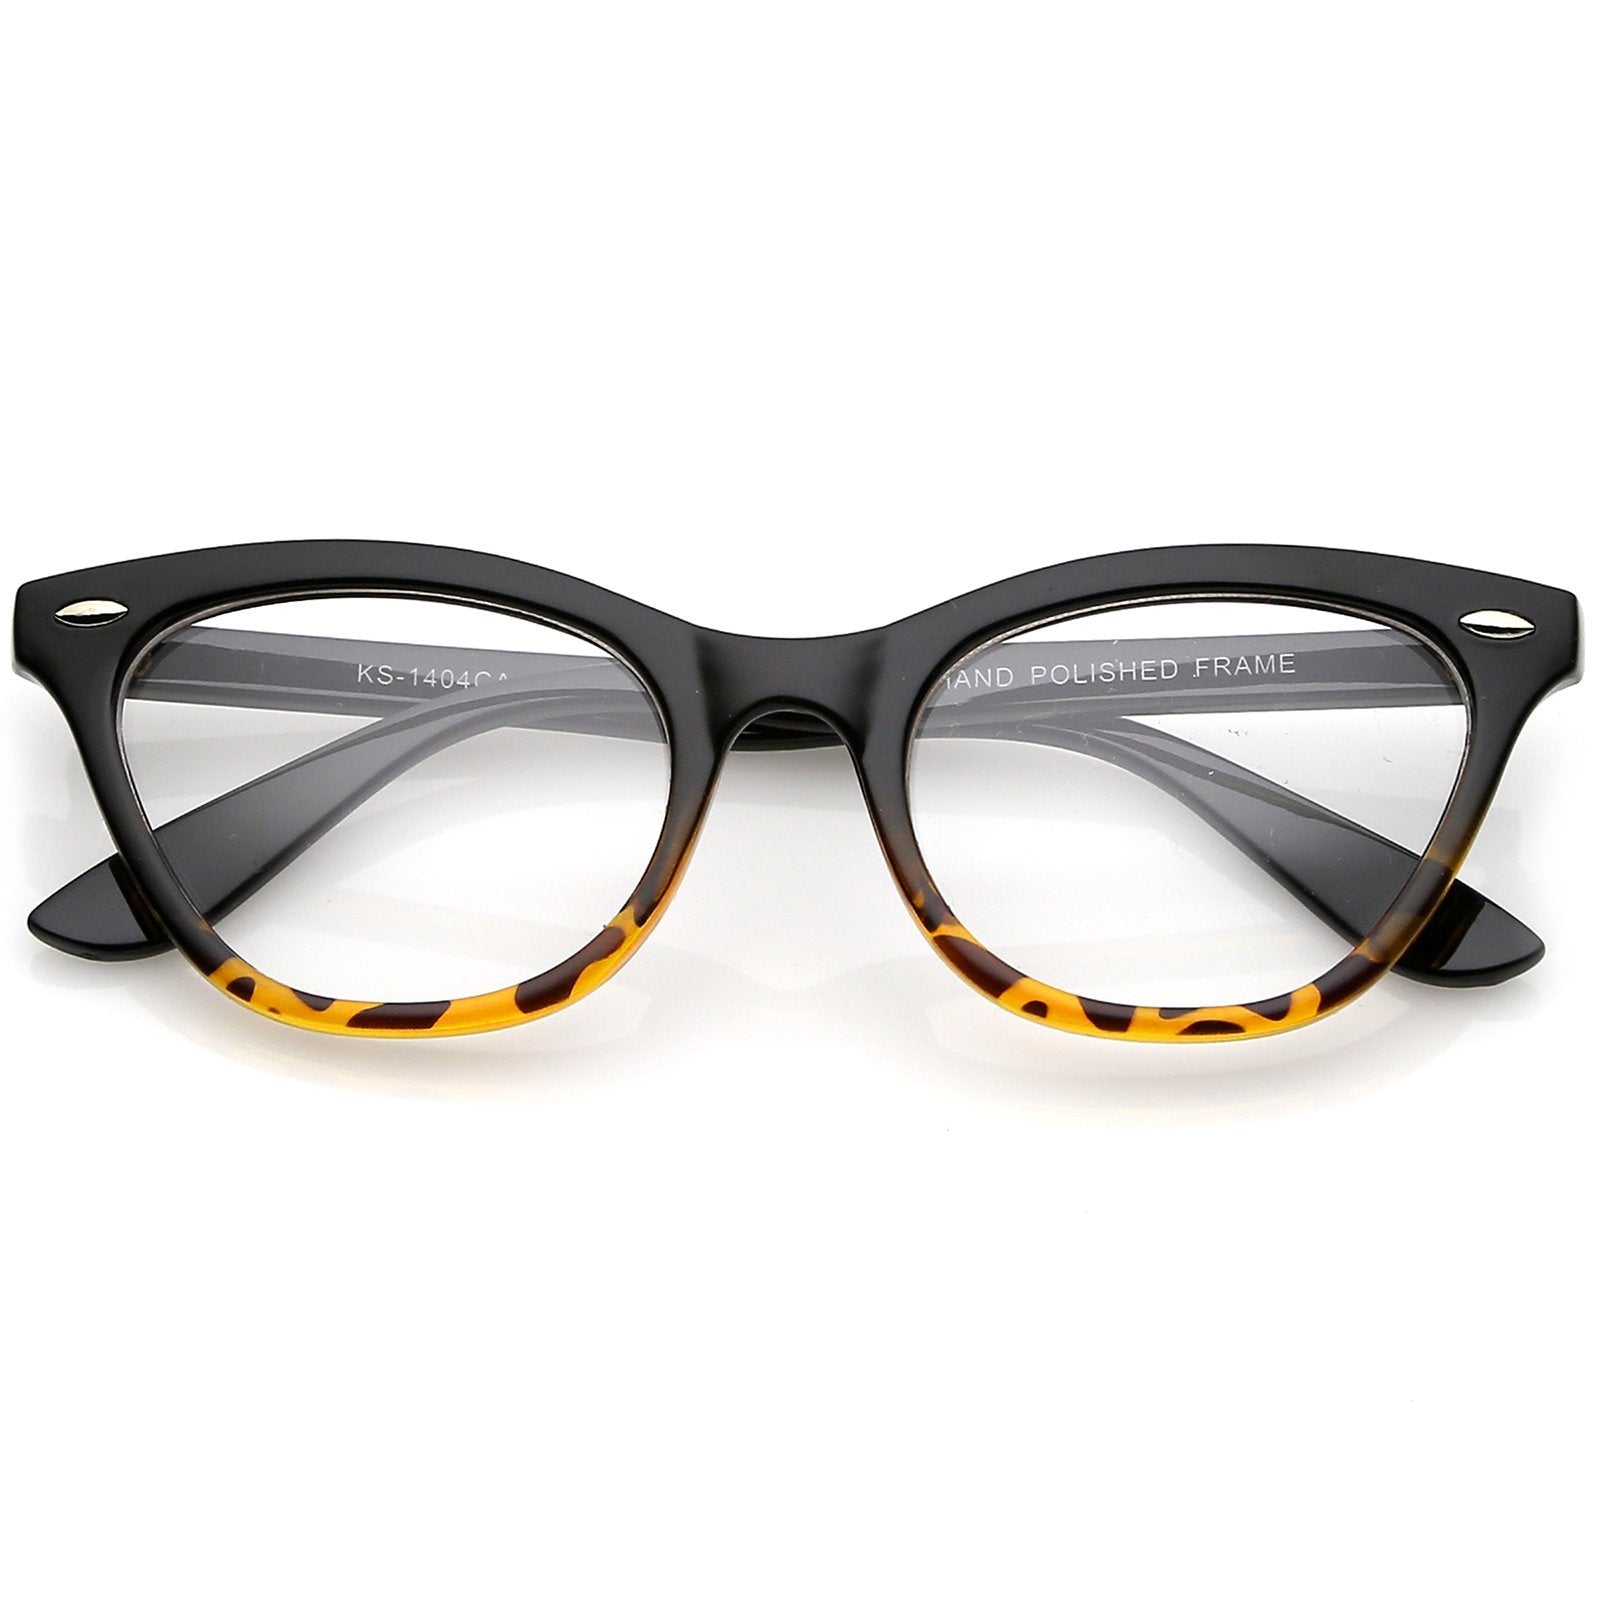 Stylish Cat Eye Black/Tortoise Eyeglasses